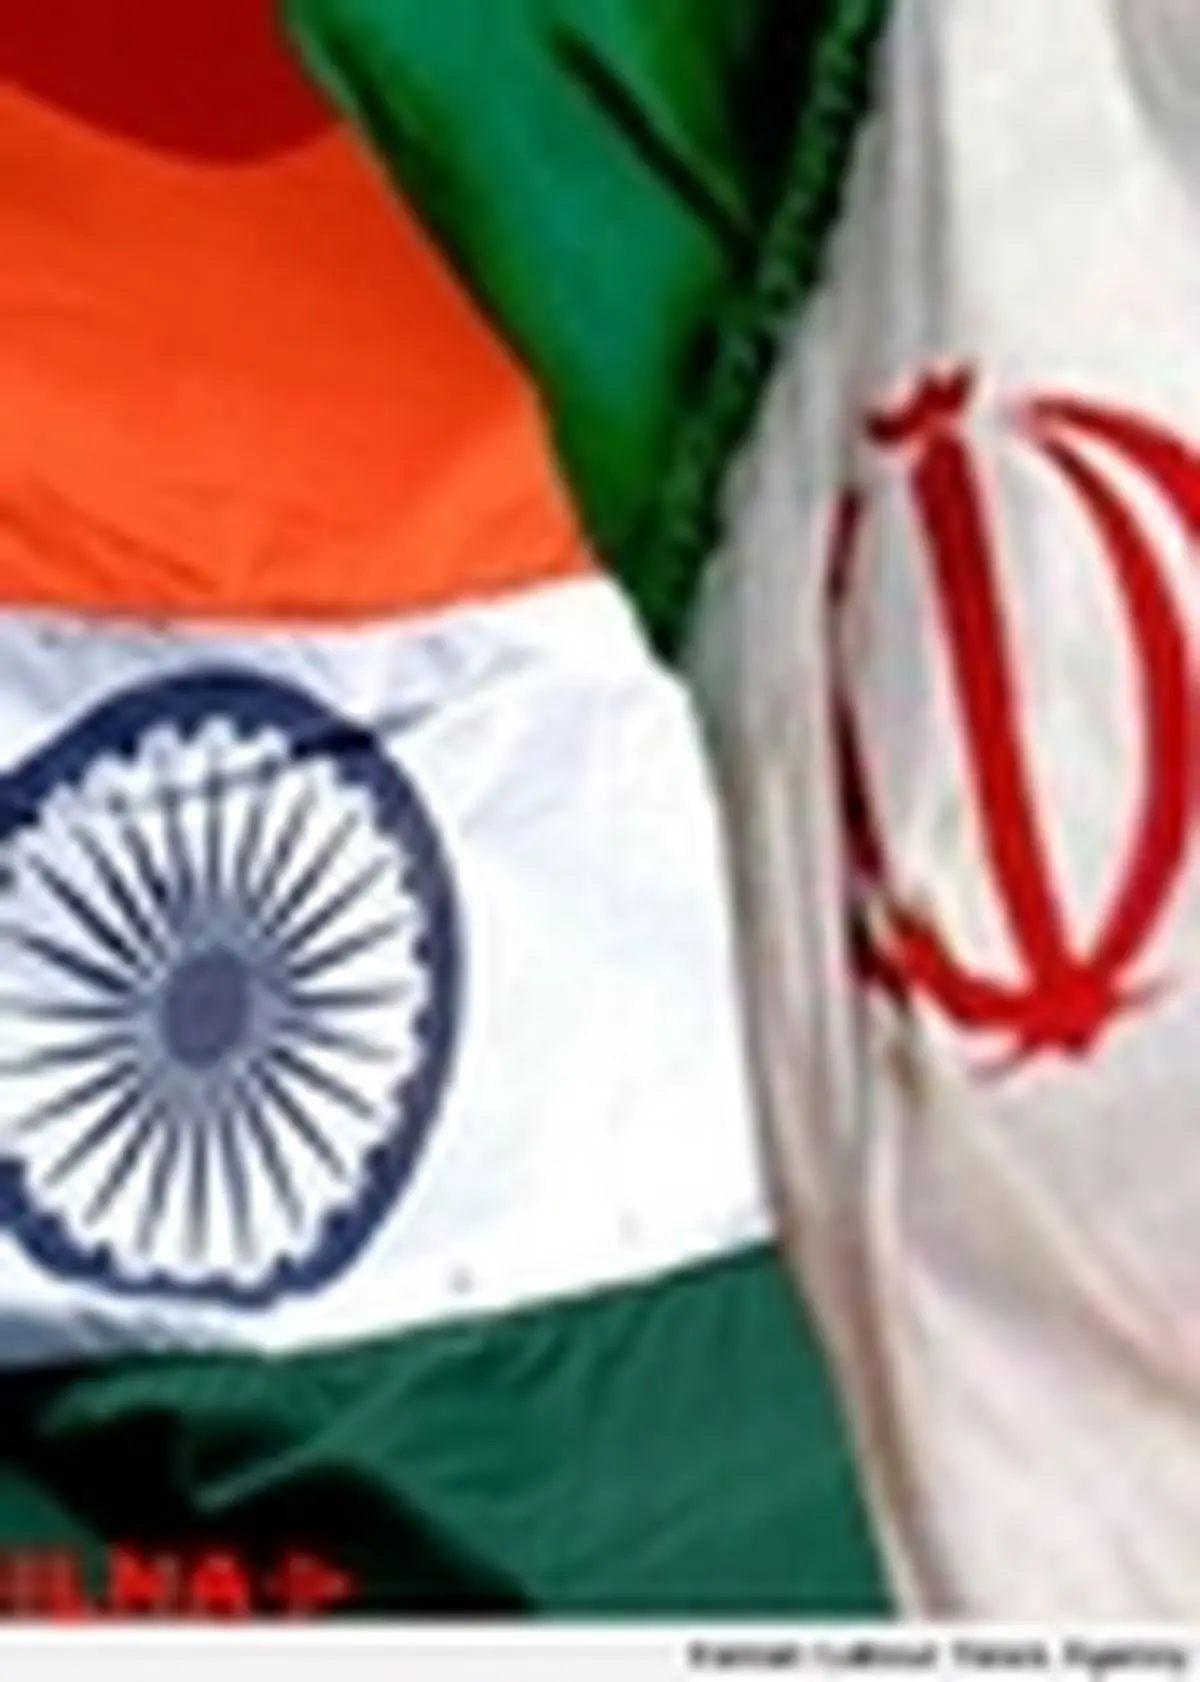 هند ۴٠٠ میلیون دلار از بدهی نفتی خود را به ایران می پردازد